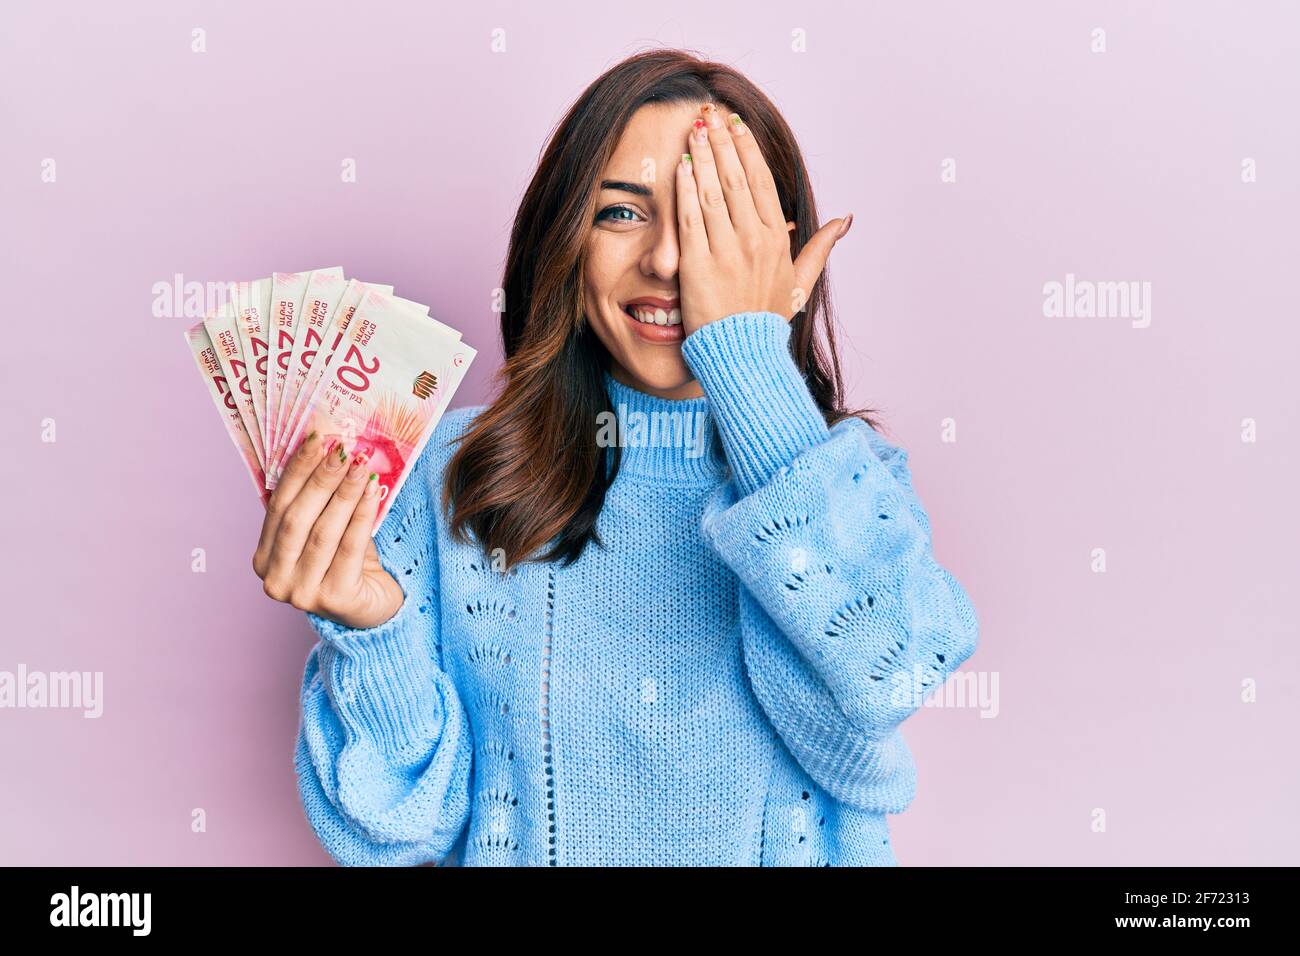 Giovane donna di brunetta che tiene 20 israel shekels banconote che coprono un occhio con la mano, sorriso fiducioso sul viso e sorpresa emozione. Foto Stock